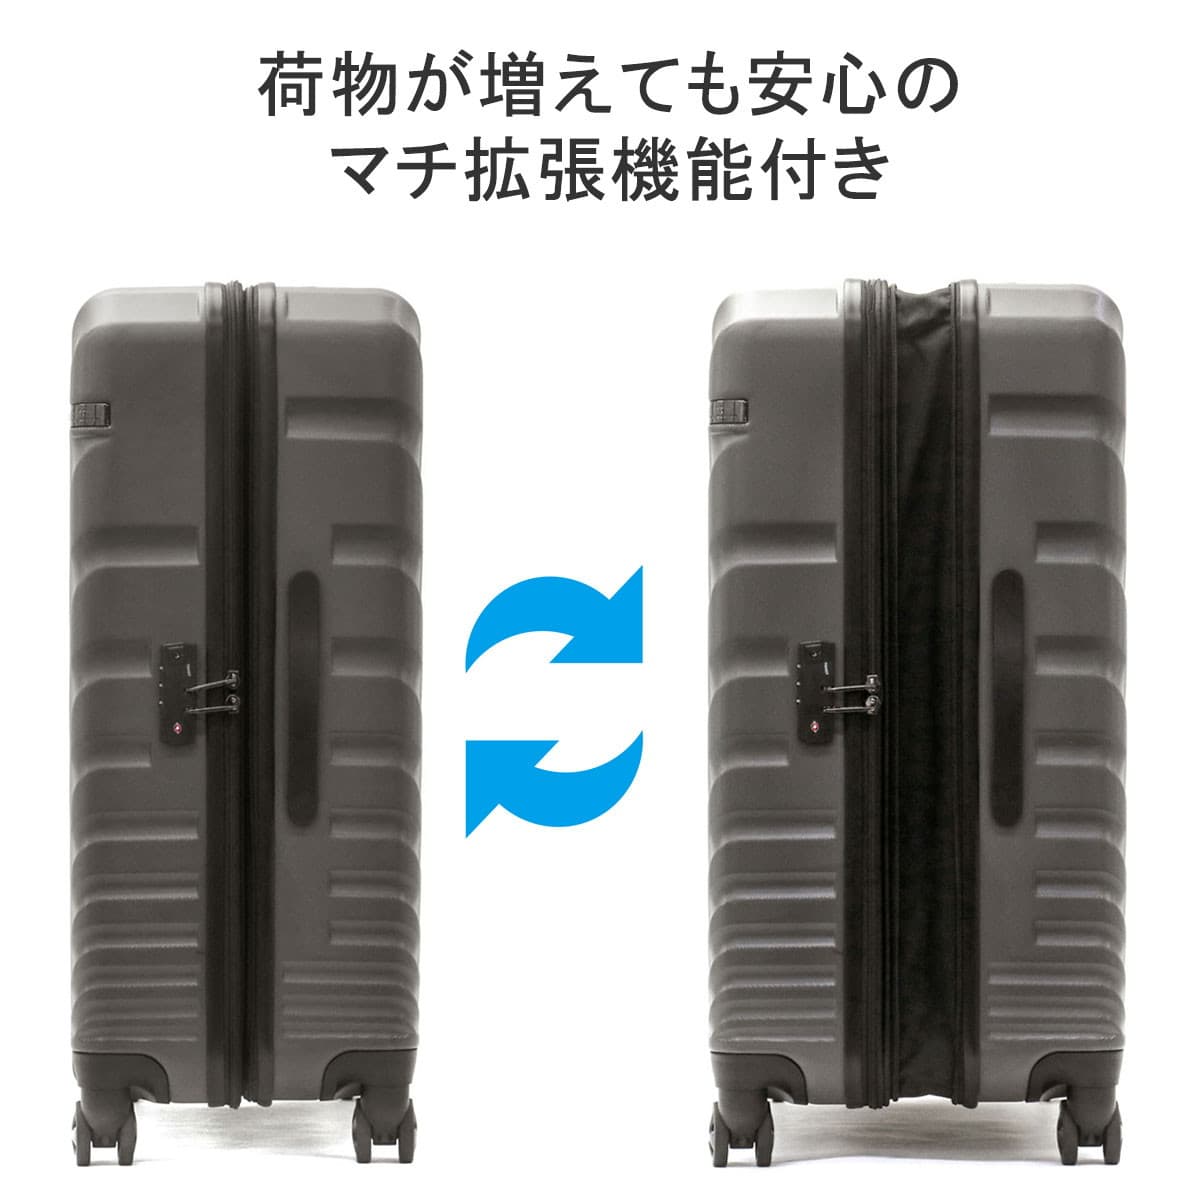 13585円 国内初の直営店 ACE DESIGNED BY IN JAPAN スーツケース エース デザインド バイ OVAL オーバル 旅行 拡張 Lサイズ 大容量 90L 111L 06423